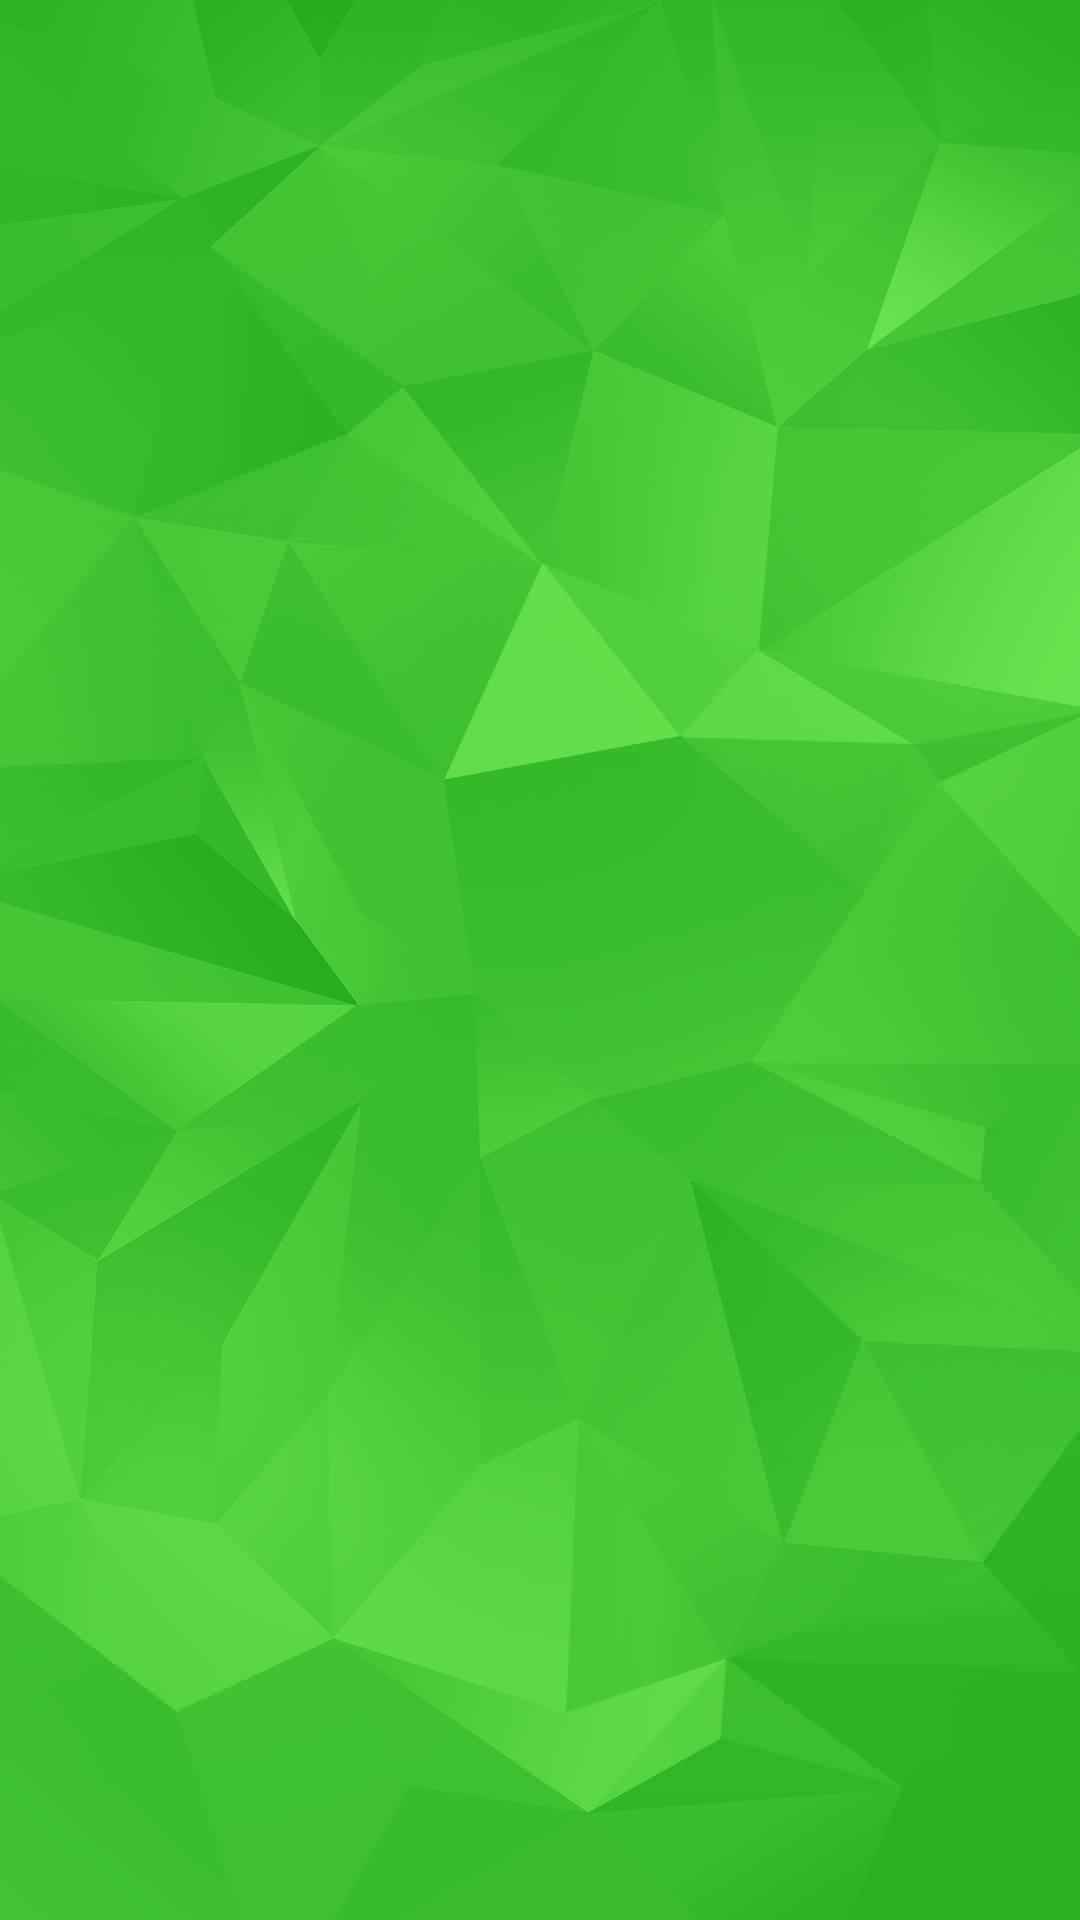 緑のポリゴン Iphone6 Plus壁紙 Wallpaperbox